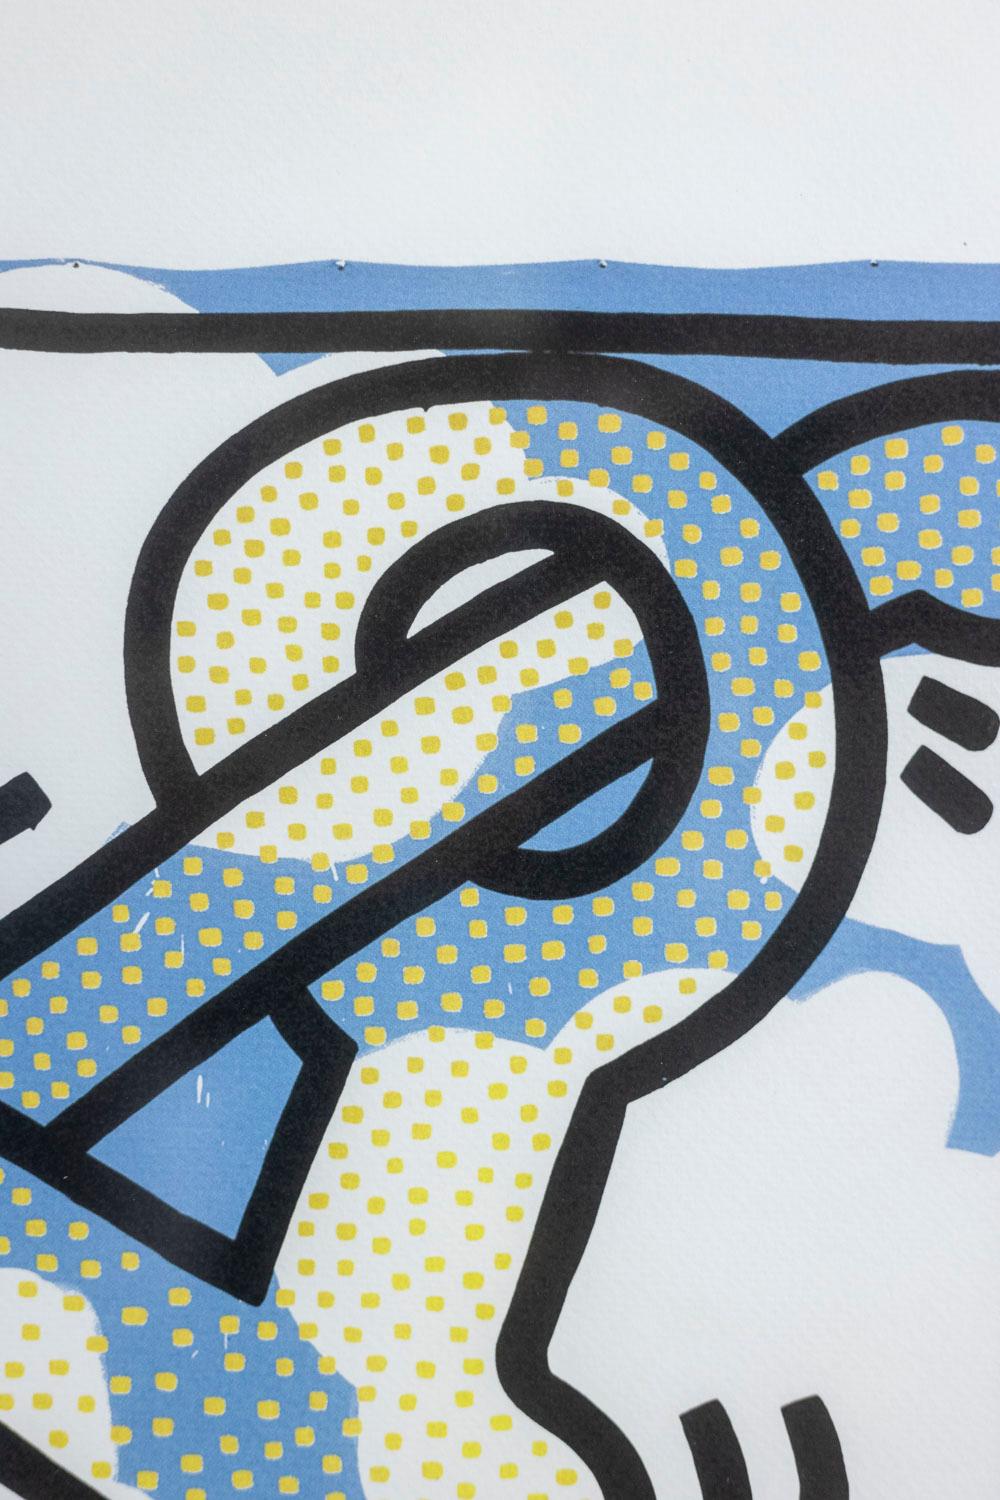 Chêne Keith Haring, sérigraphie de soie, années 1990 en vente